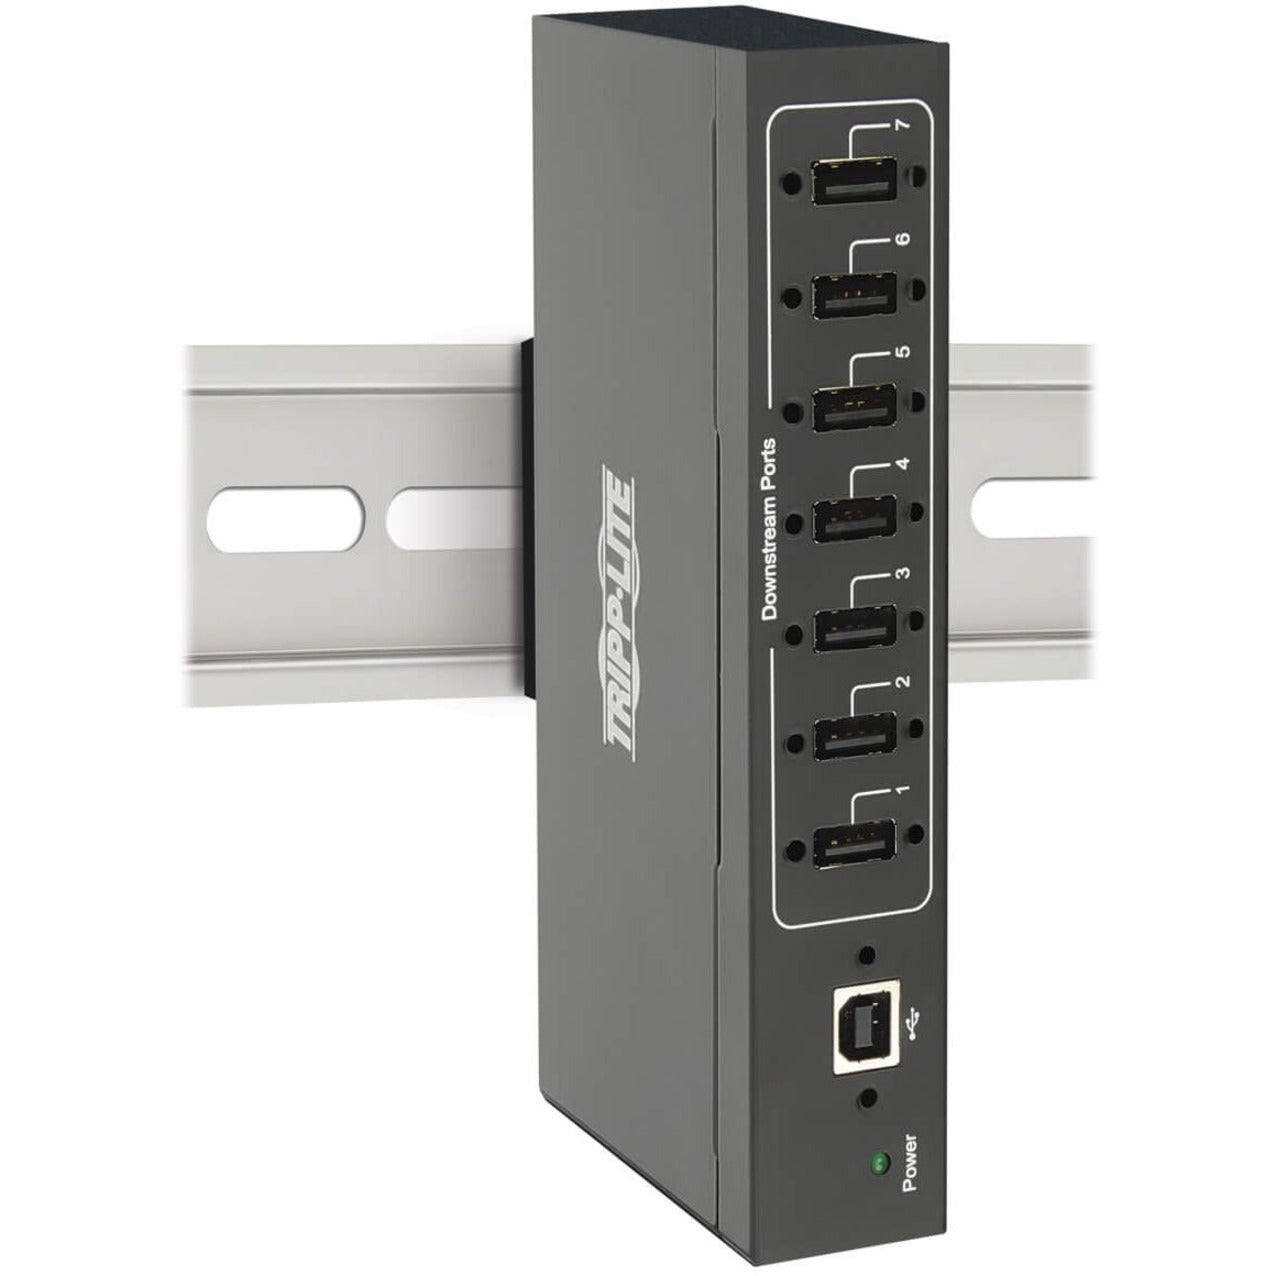 Tripp Lite U223-007-IND-1 7-Port Industrial-Grade USB 2.0 Hub, Wall/DIN Rail Mountable, Black